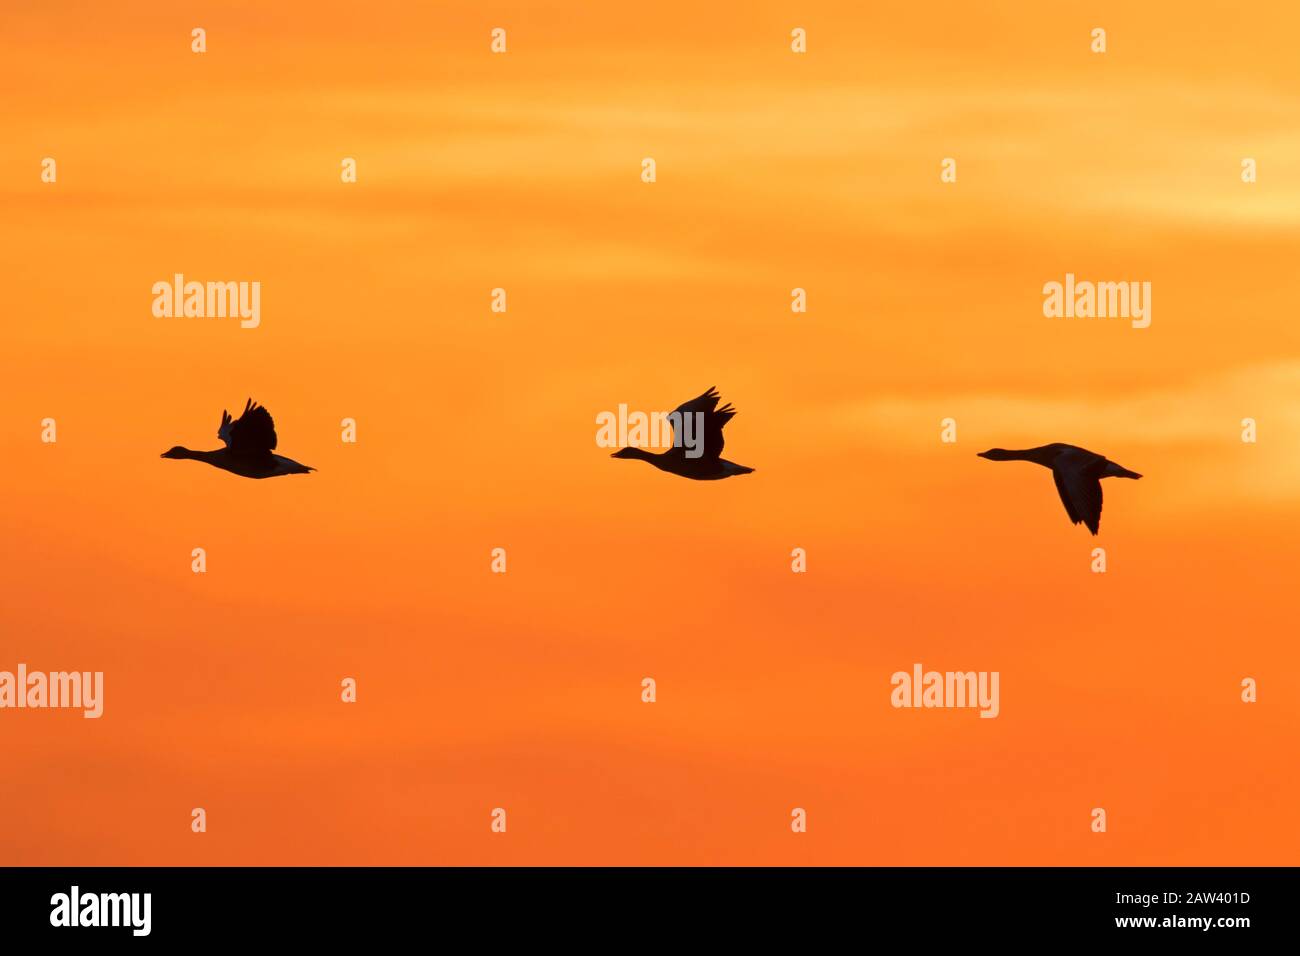 Troupeau d'oies grises en migration (Anser anser) silhouetted voler contre le ciel orange au coucher du soleil / lever du soleil Banque D'Images